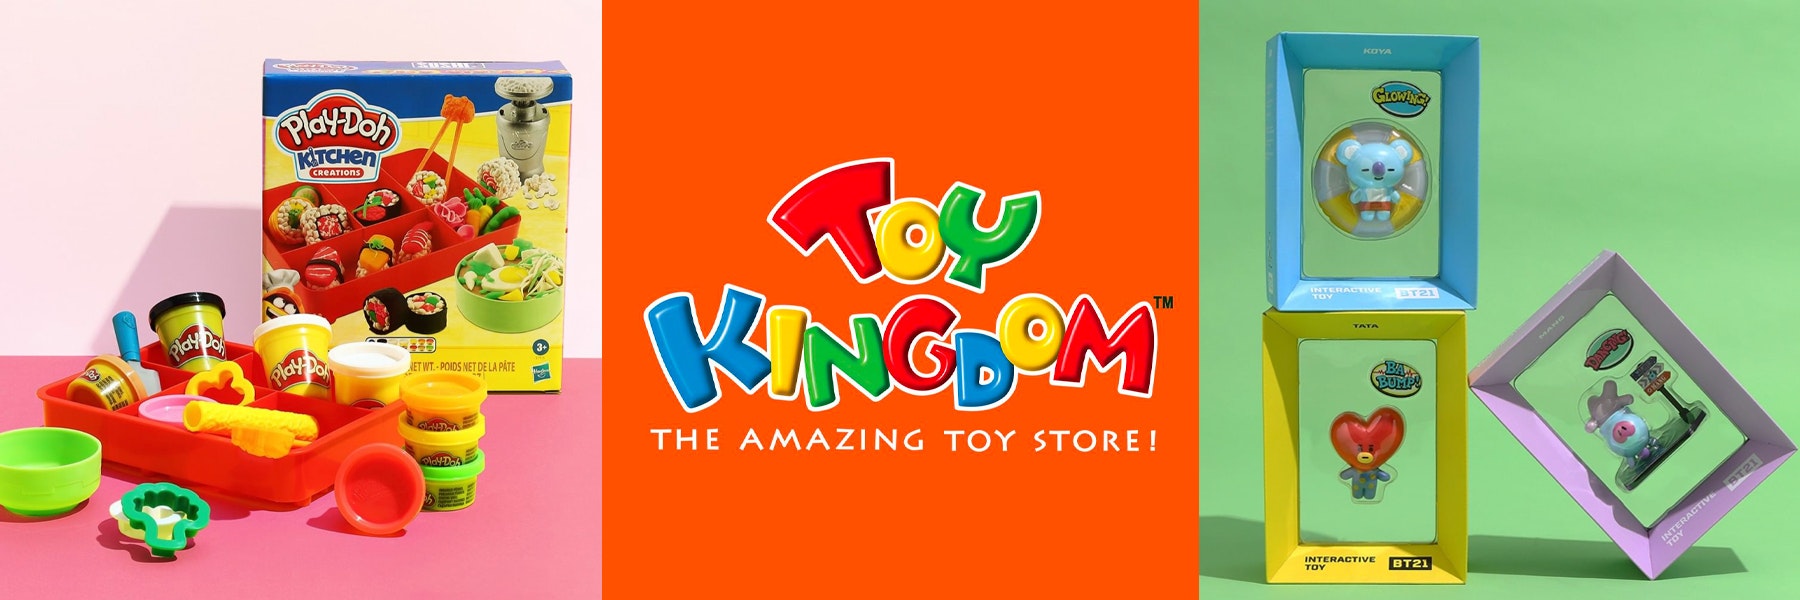 bannerlist-Toy Kingdom